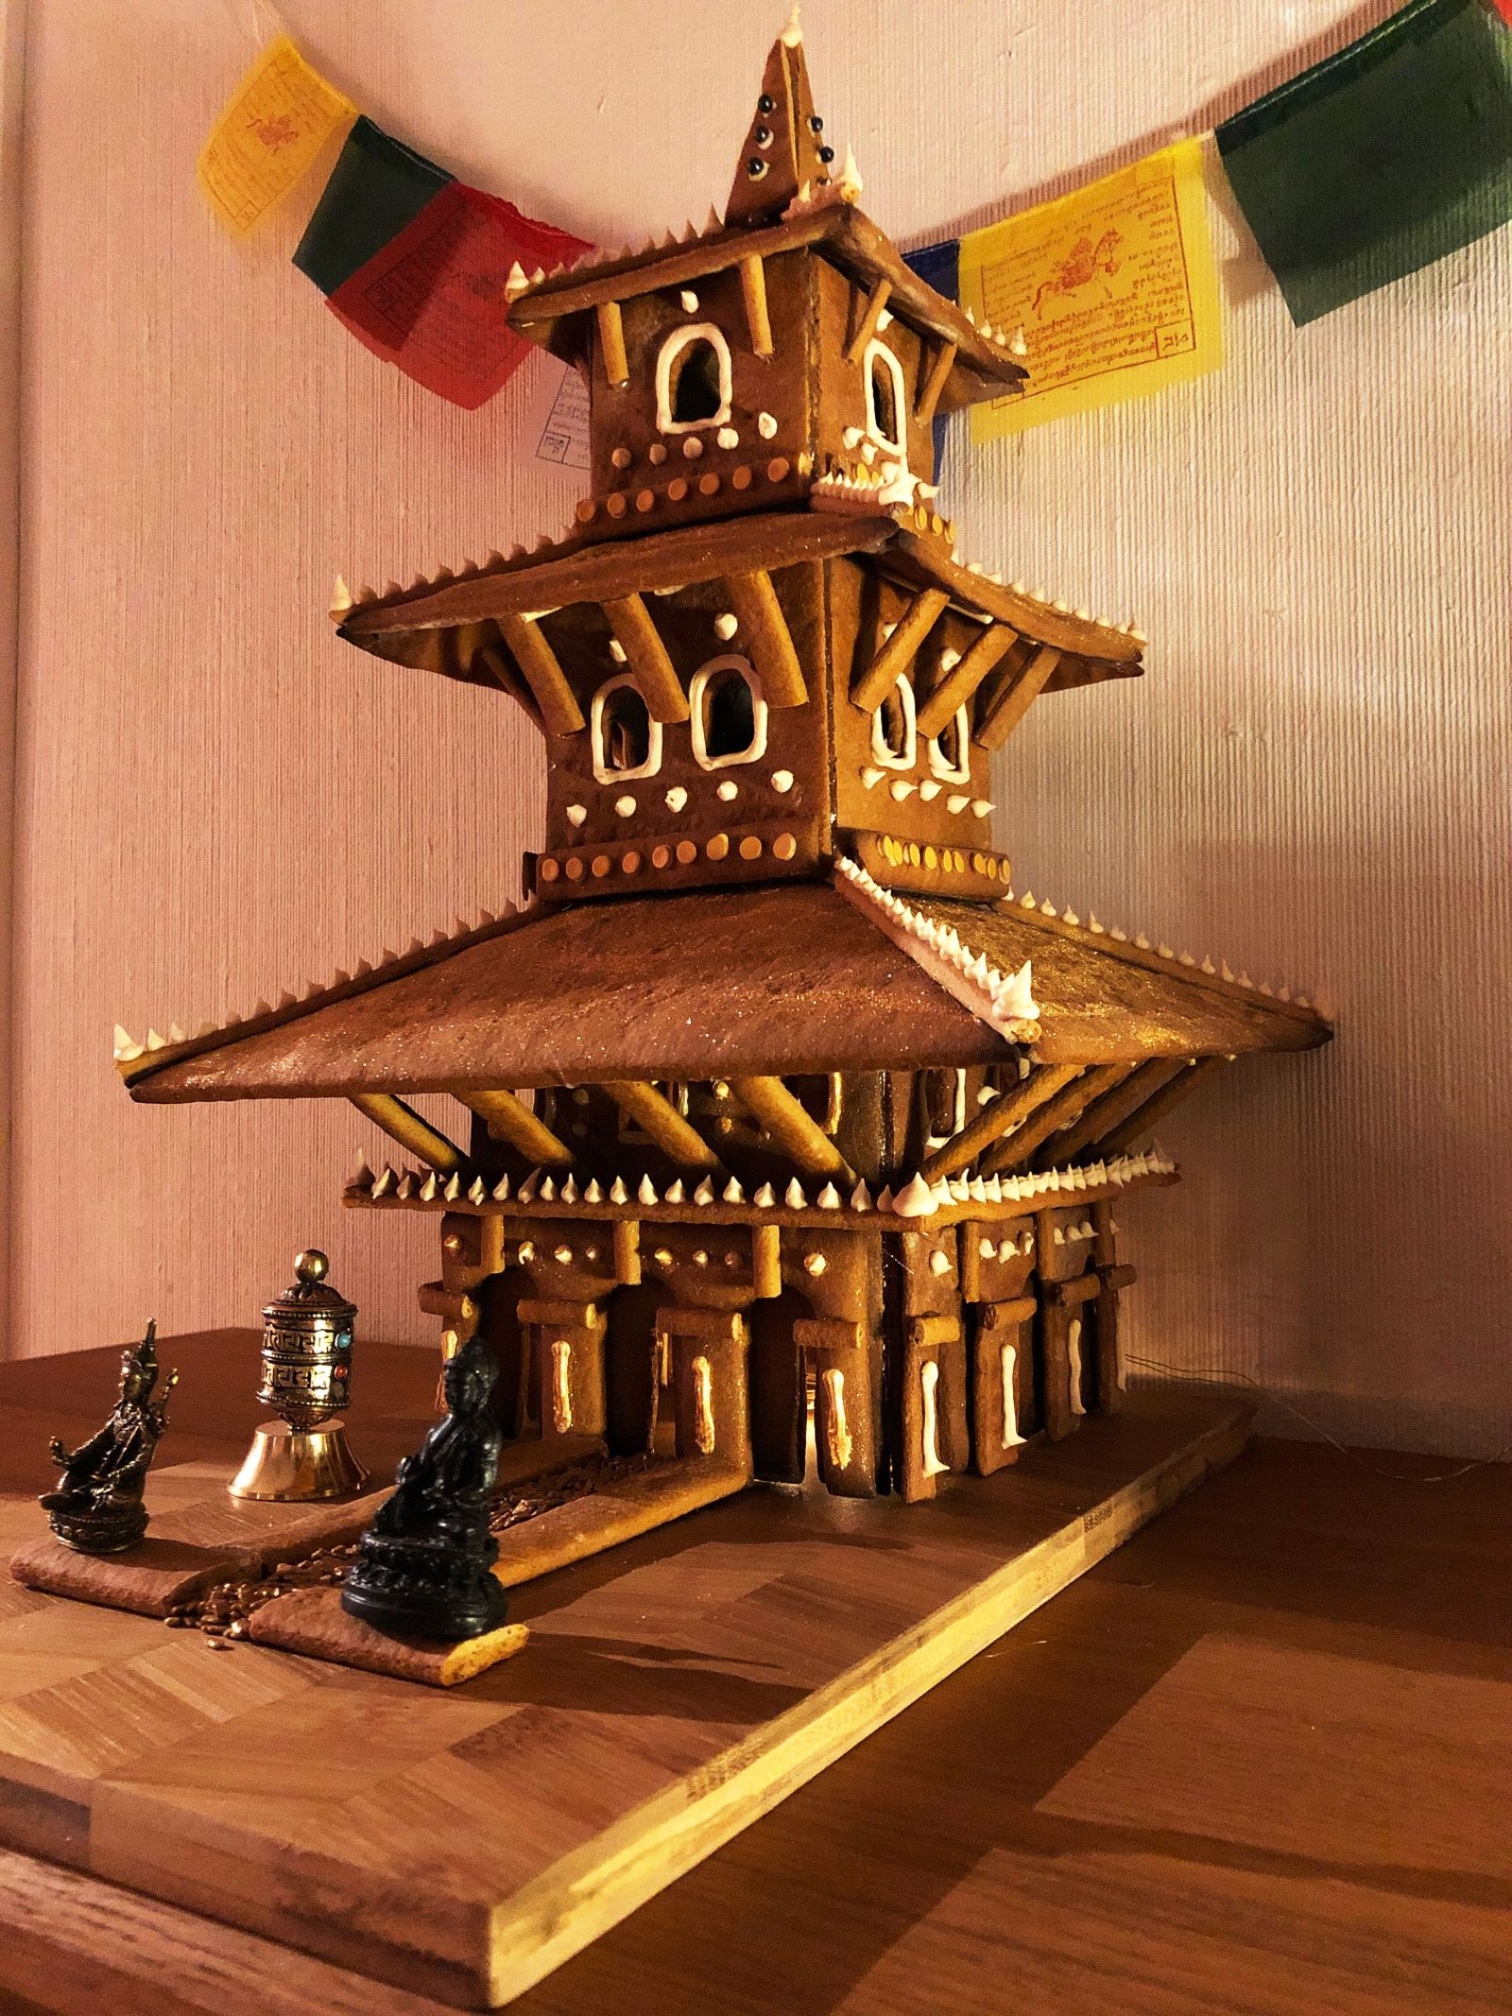 Tomas Svensson berättar att han blev inspirerad av sin dotters utbildningsresa till Nepal och de fantastiskt fina tempel som finns där! ”Tänkte att ett tempel måste gå att göra som ett pepparkakshus. Och här är resultatet”, skriver han.